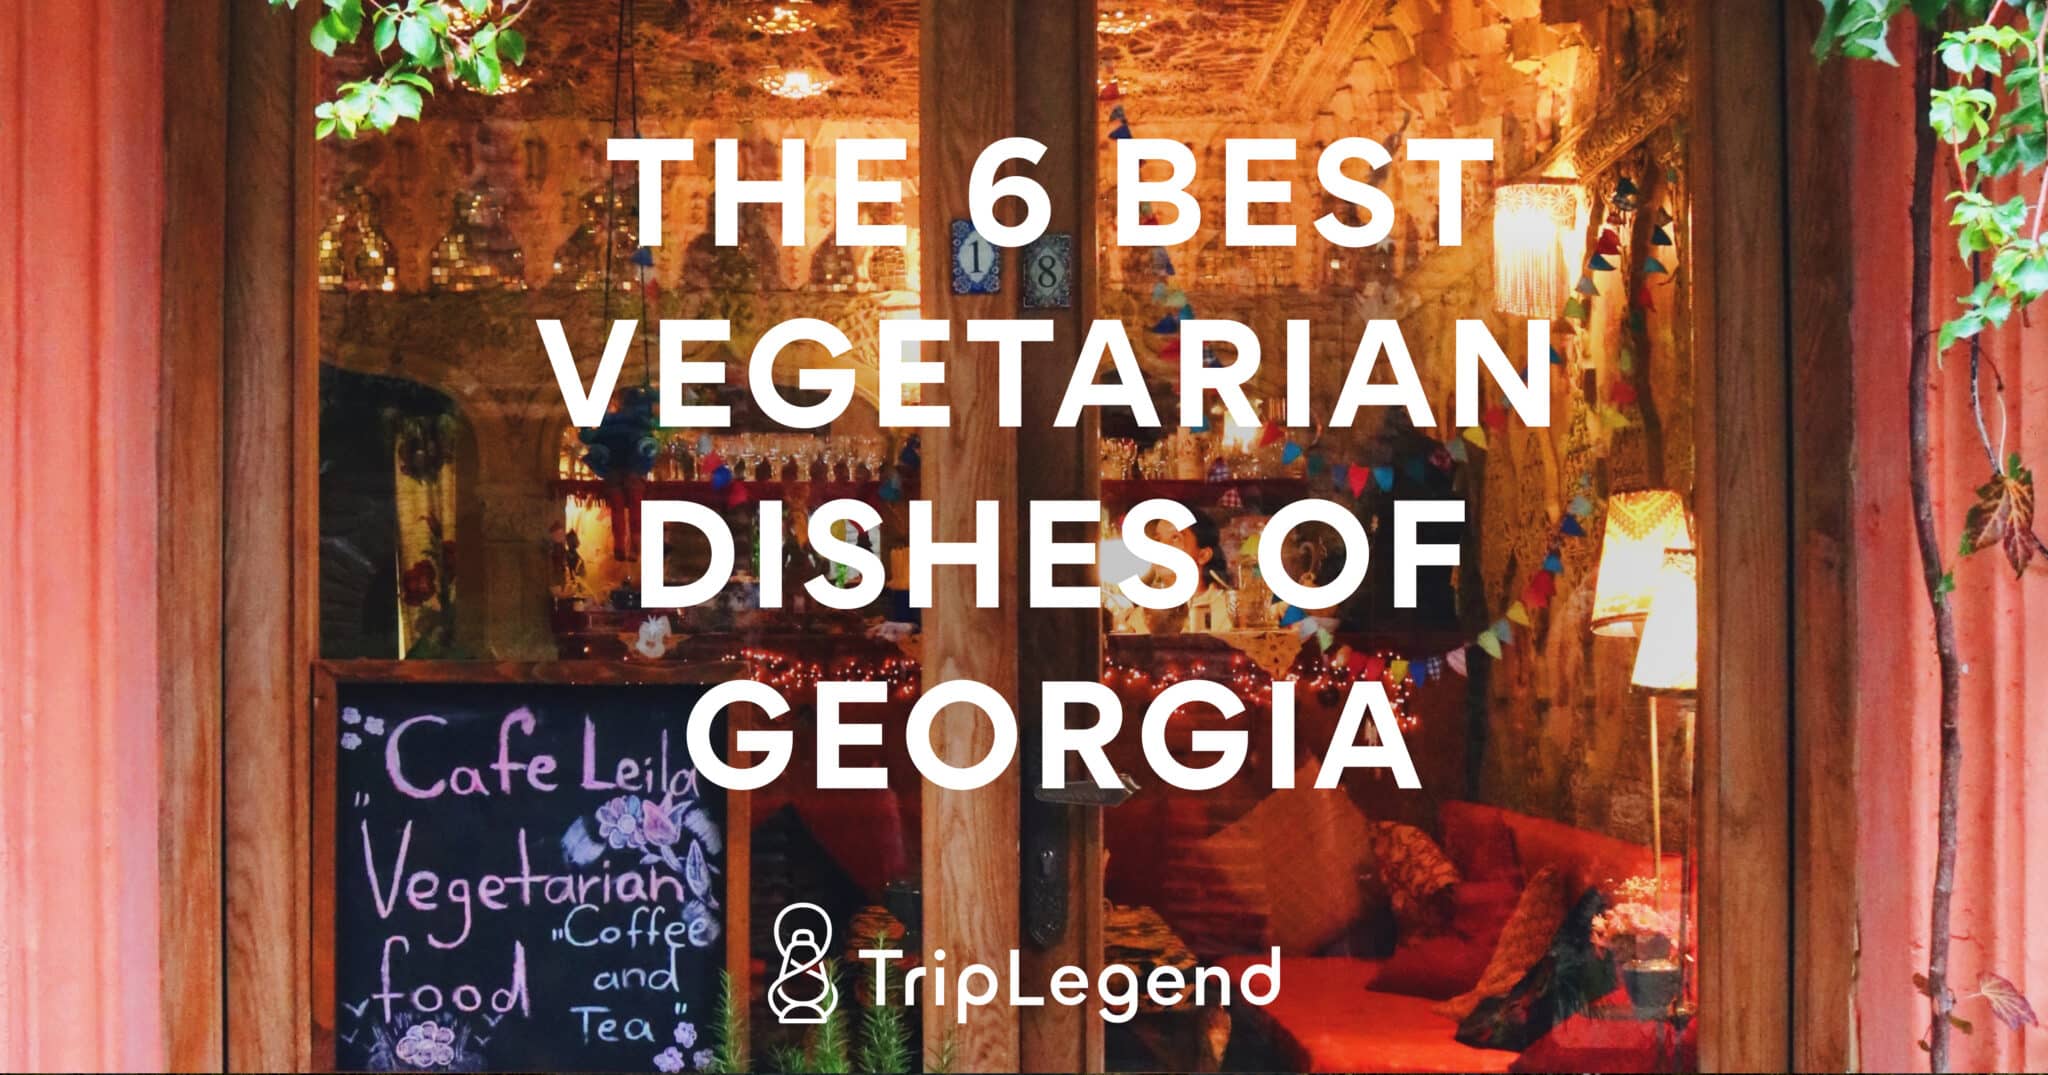 The 6 best vegetarian dishes in Georgia Scaled.jpg